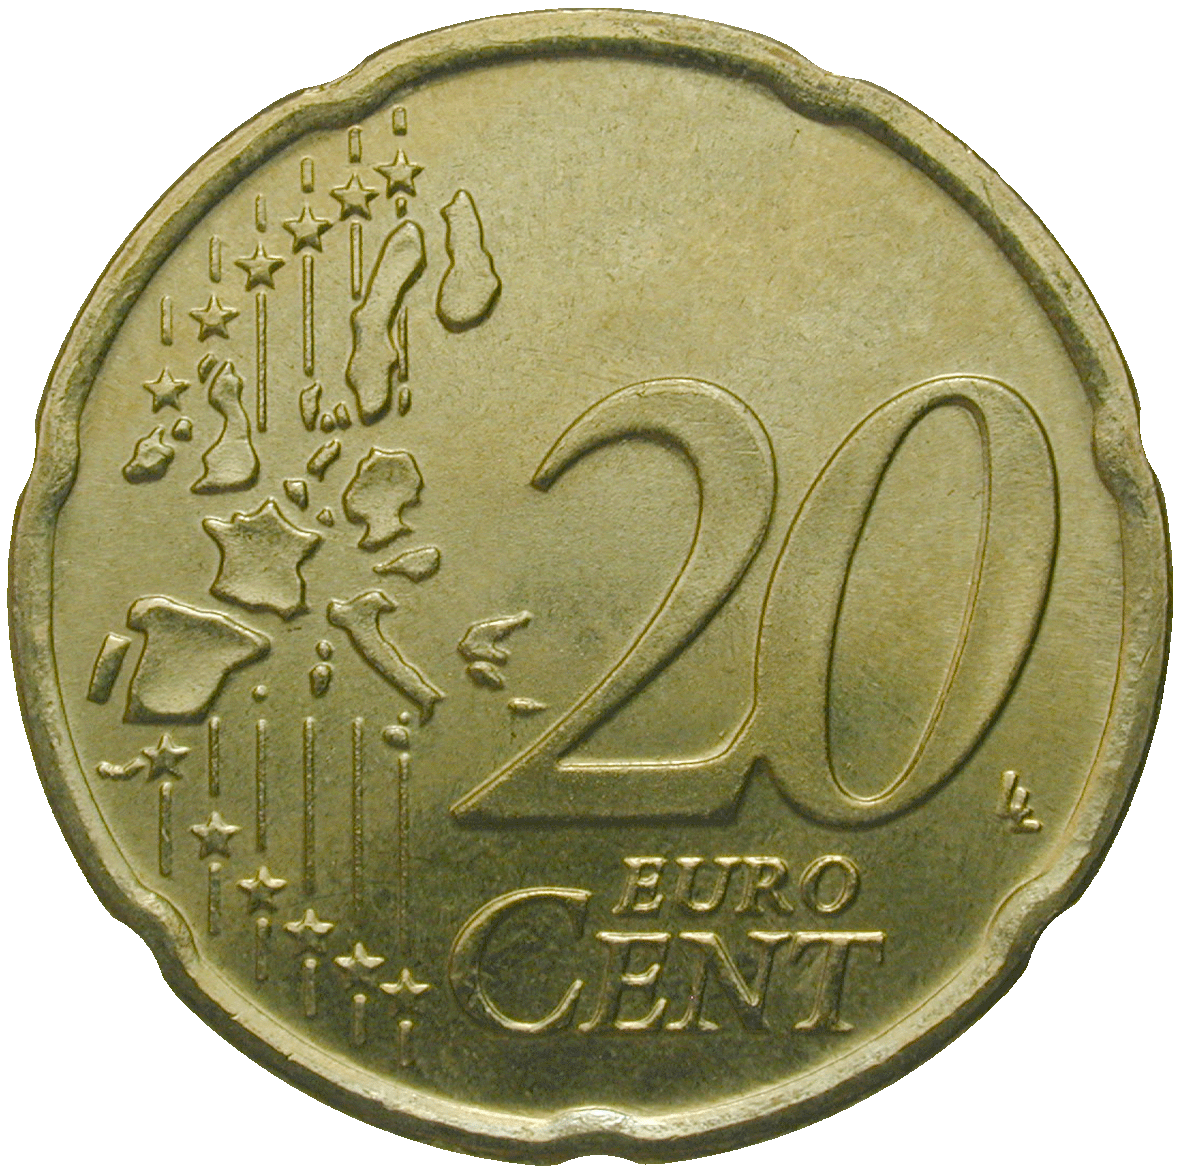 Republik Griechenland, 20 Eurocent 2002 (reverse)